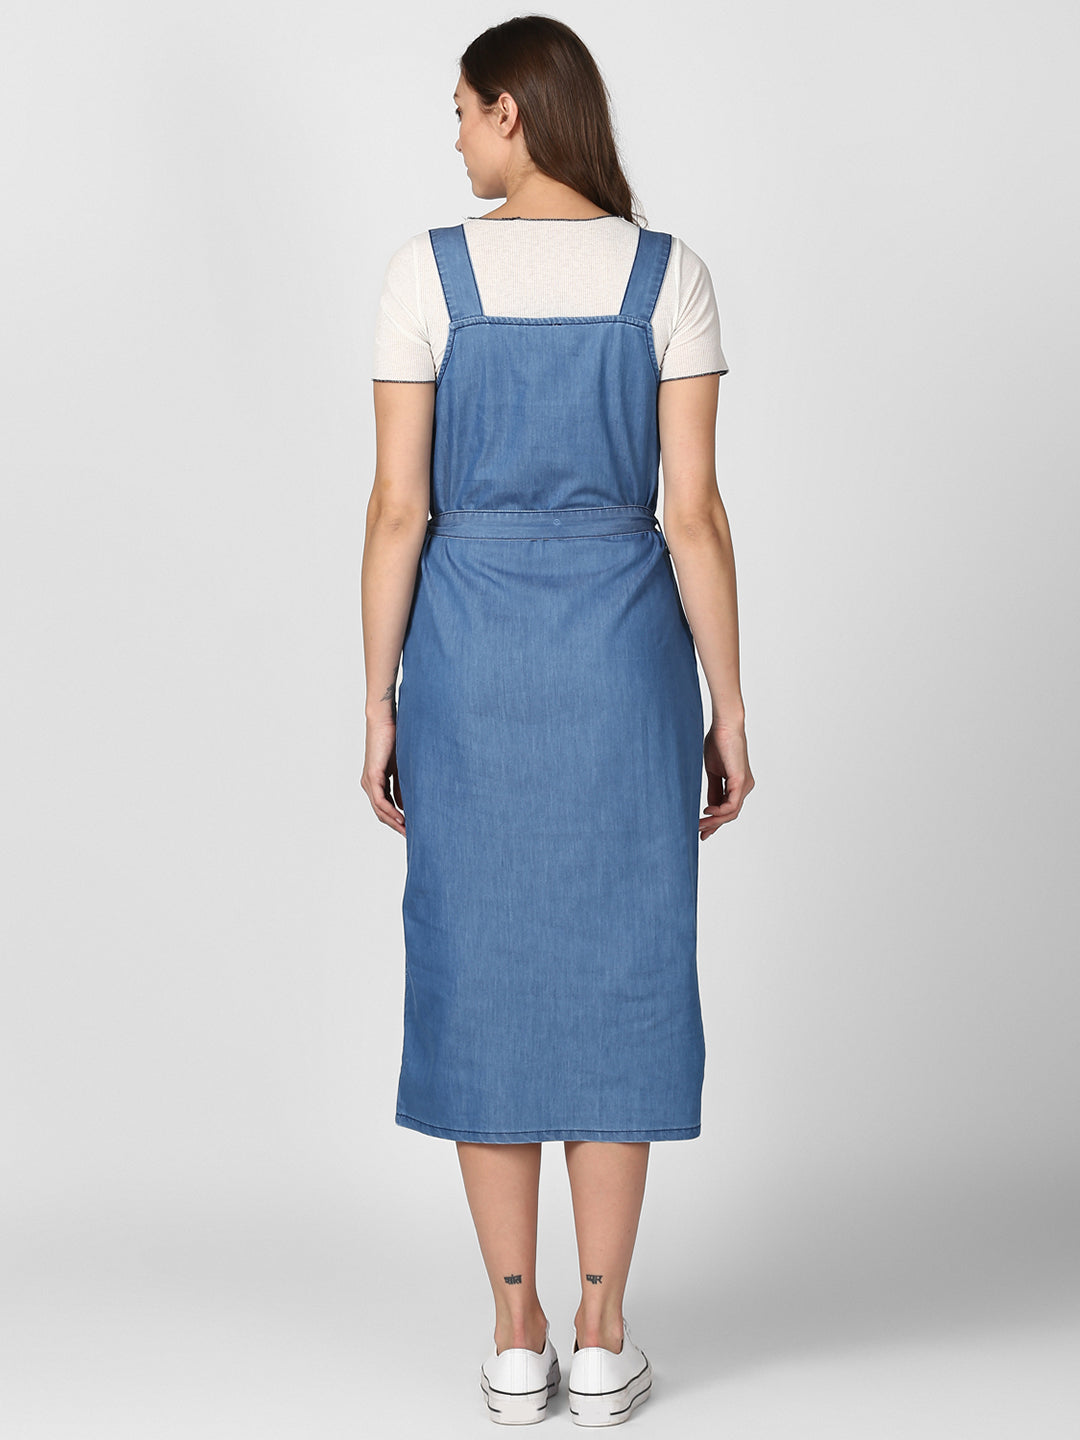 Women's Light Blue Denim Dress with Straps (inner not included)